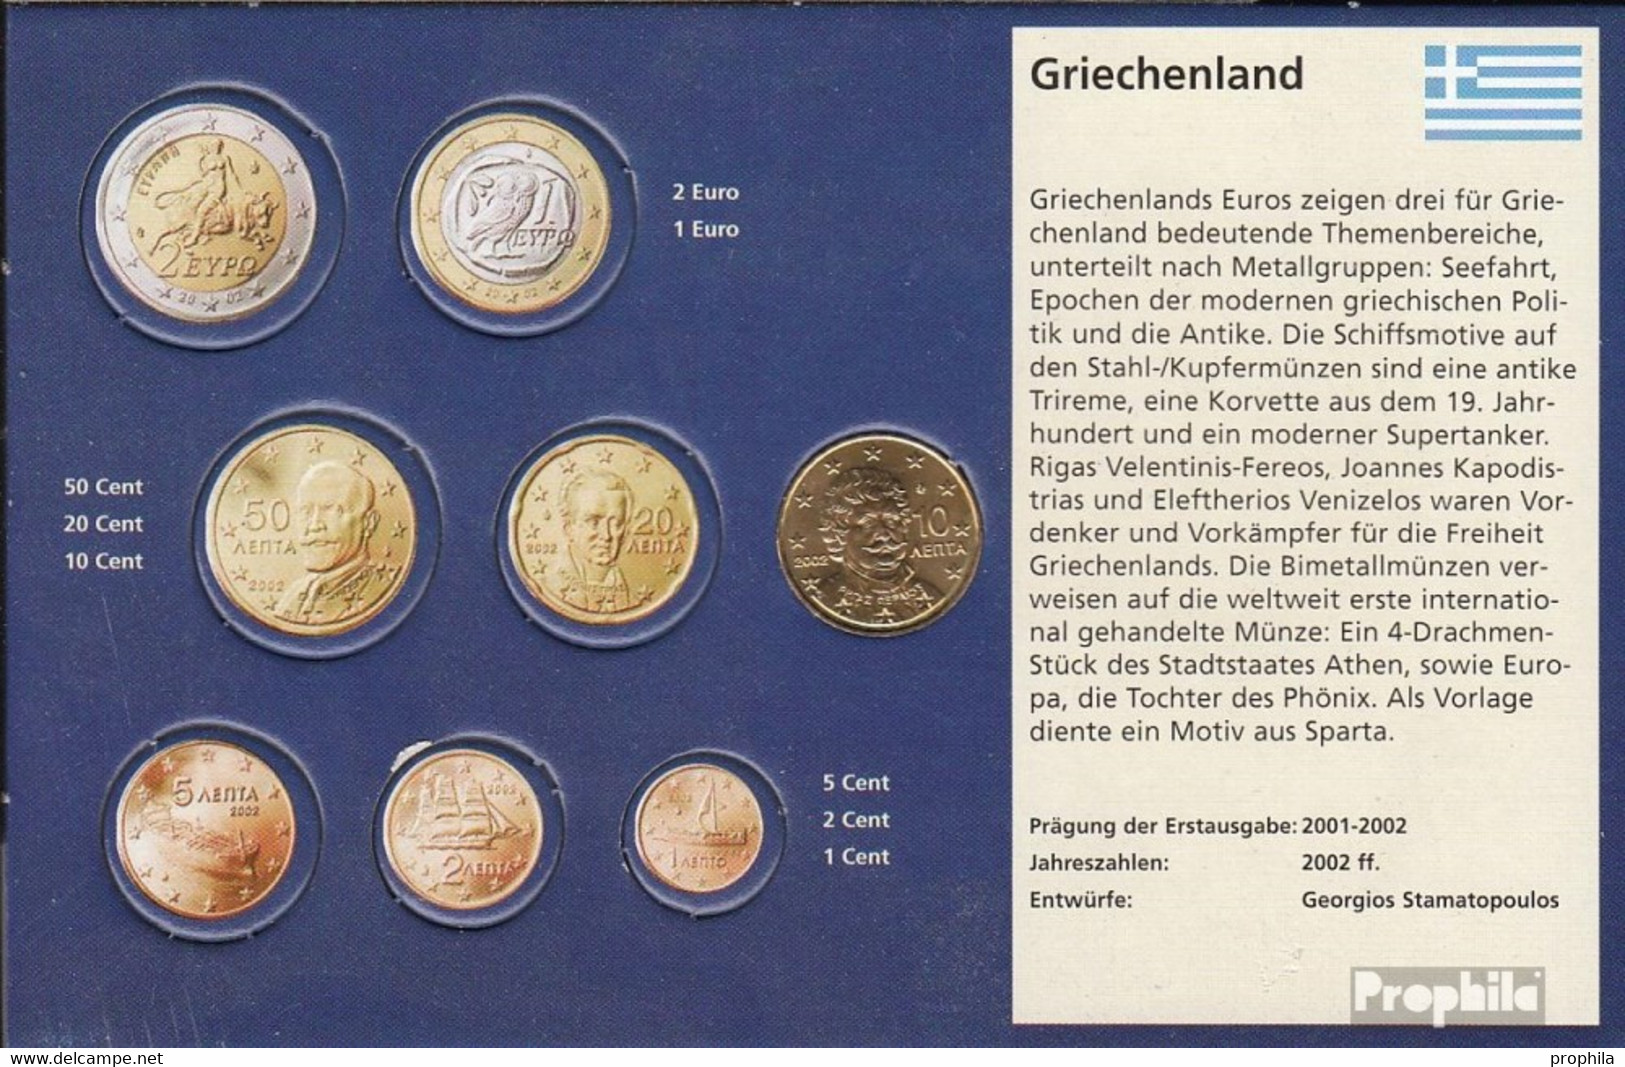 Griechenland GR 4 2002 G Stgl./unzirkuliert Mit Geheimzeichen Stgl./unzirkuliert 2002 Kursmünze 10 Cent - Greece